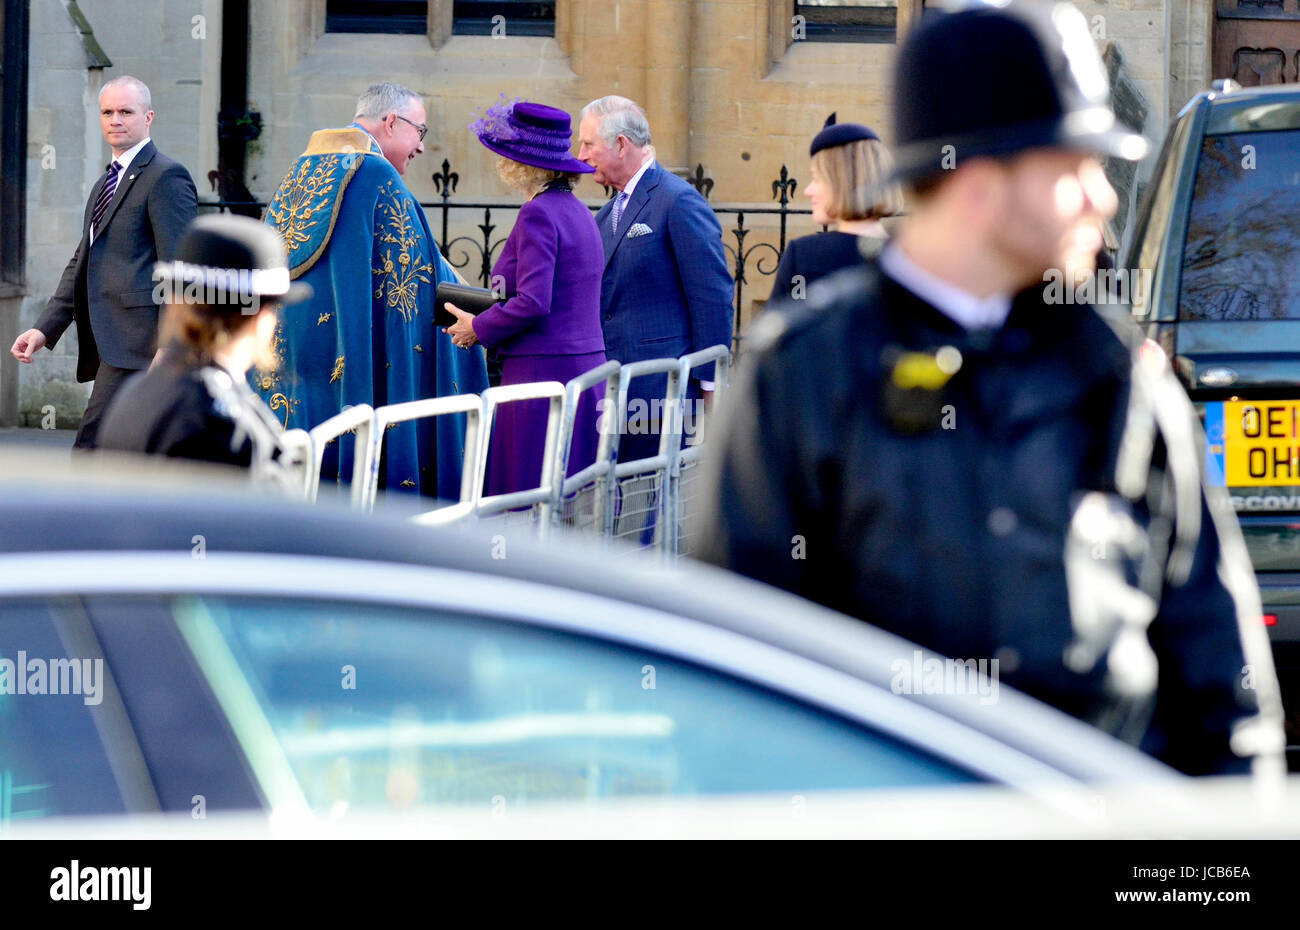 Prinz Charles und Camilla für eine Veranstaltung in der Westminster Abbey angekommen. Polizei und königlichen Schutz Offiziere im Dienst Stockfoto